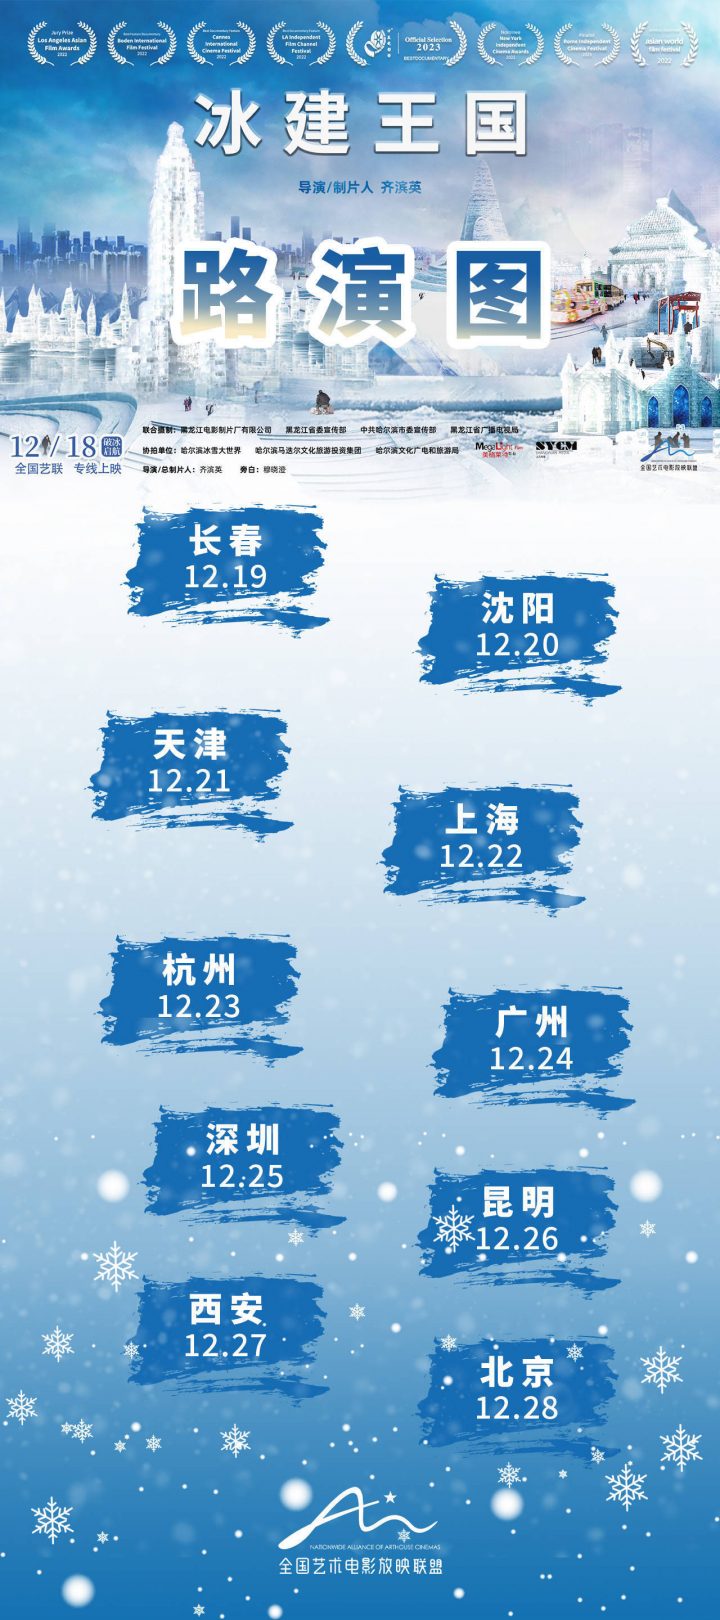 纪录电影《冰建王国》正式上映，将于12月18日在全国艺联首映，带来温暖的感动。